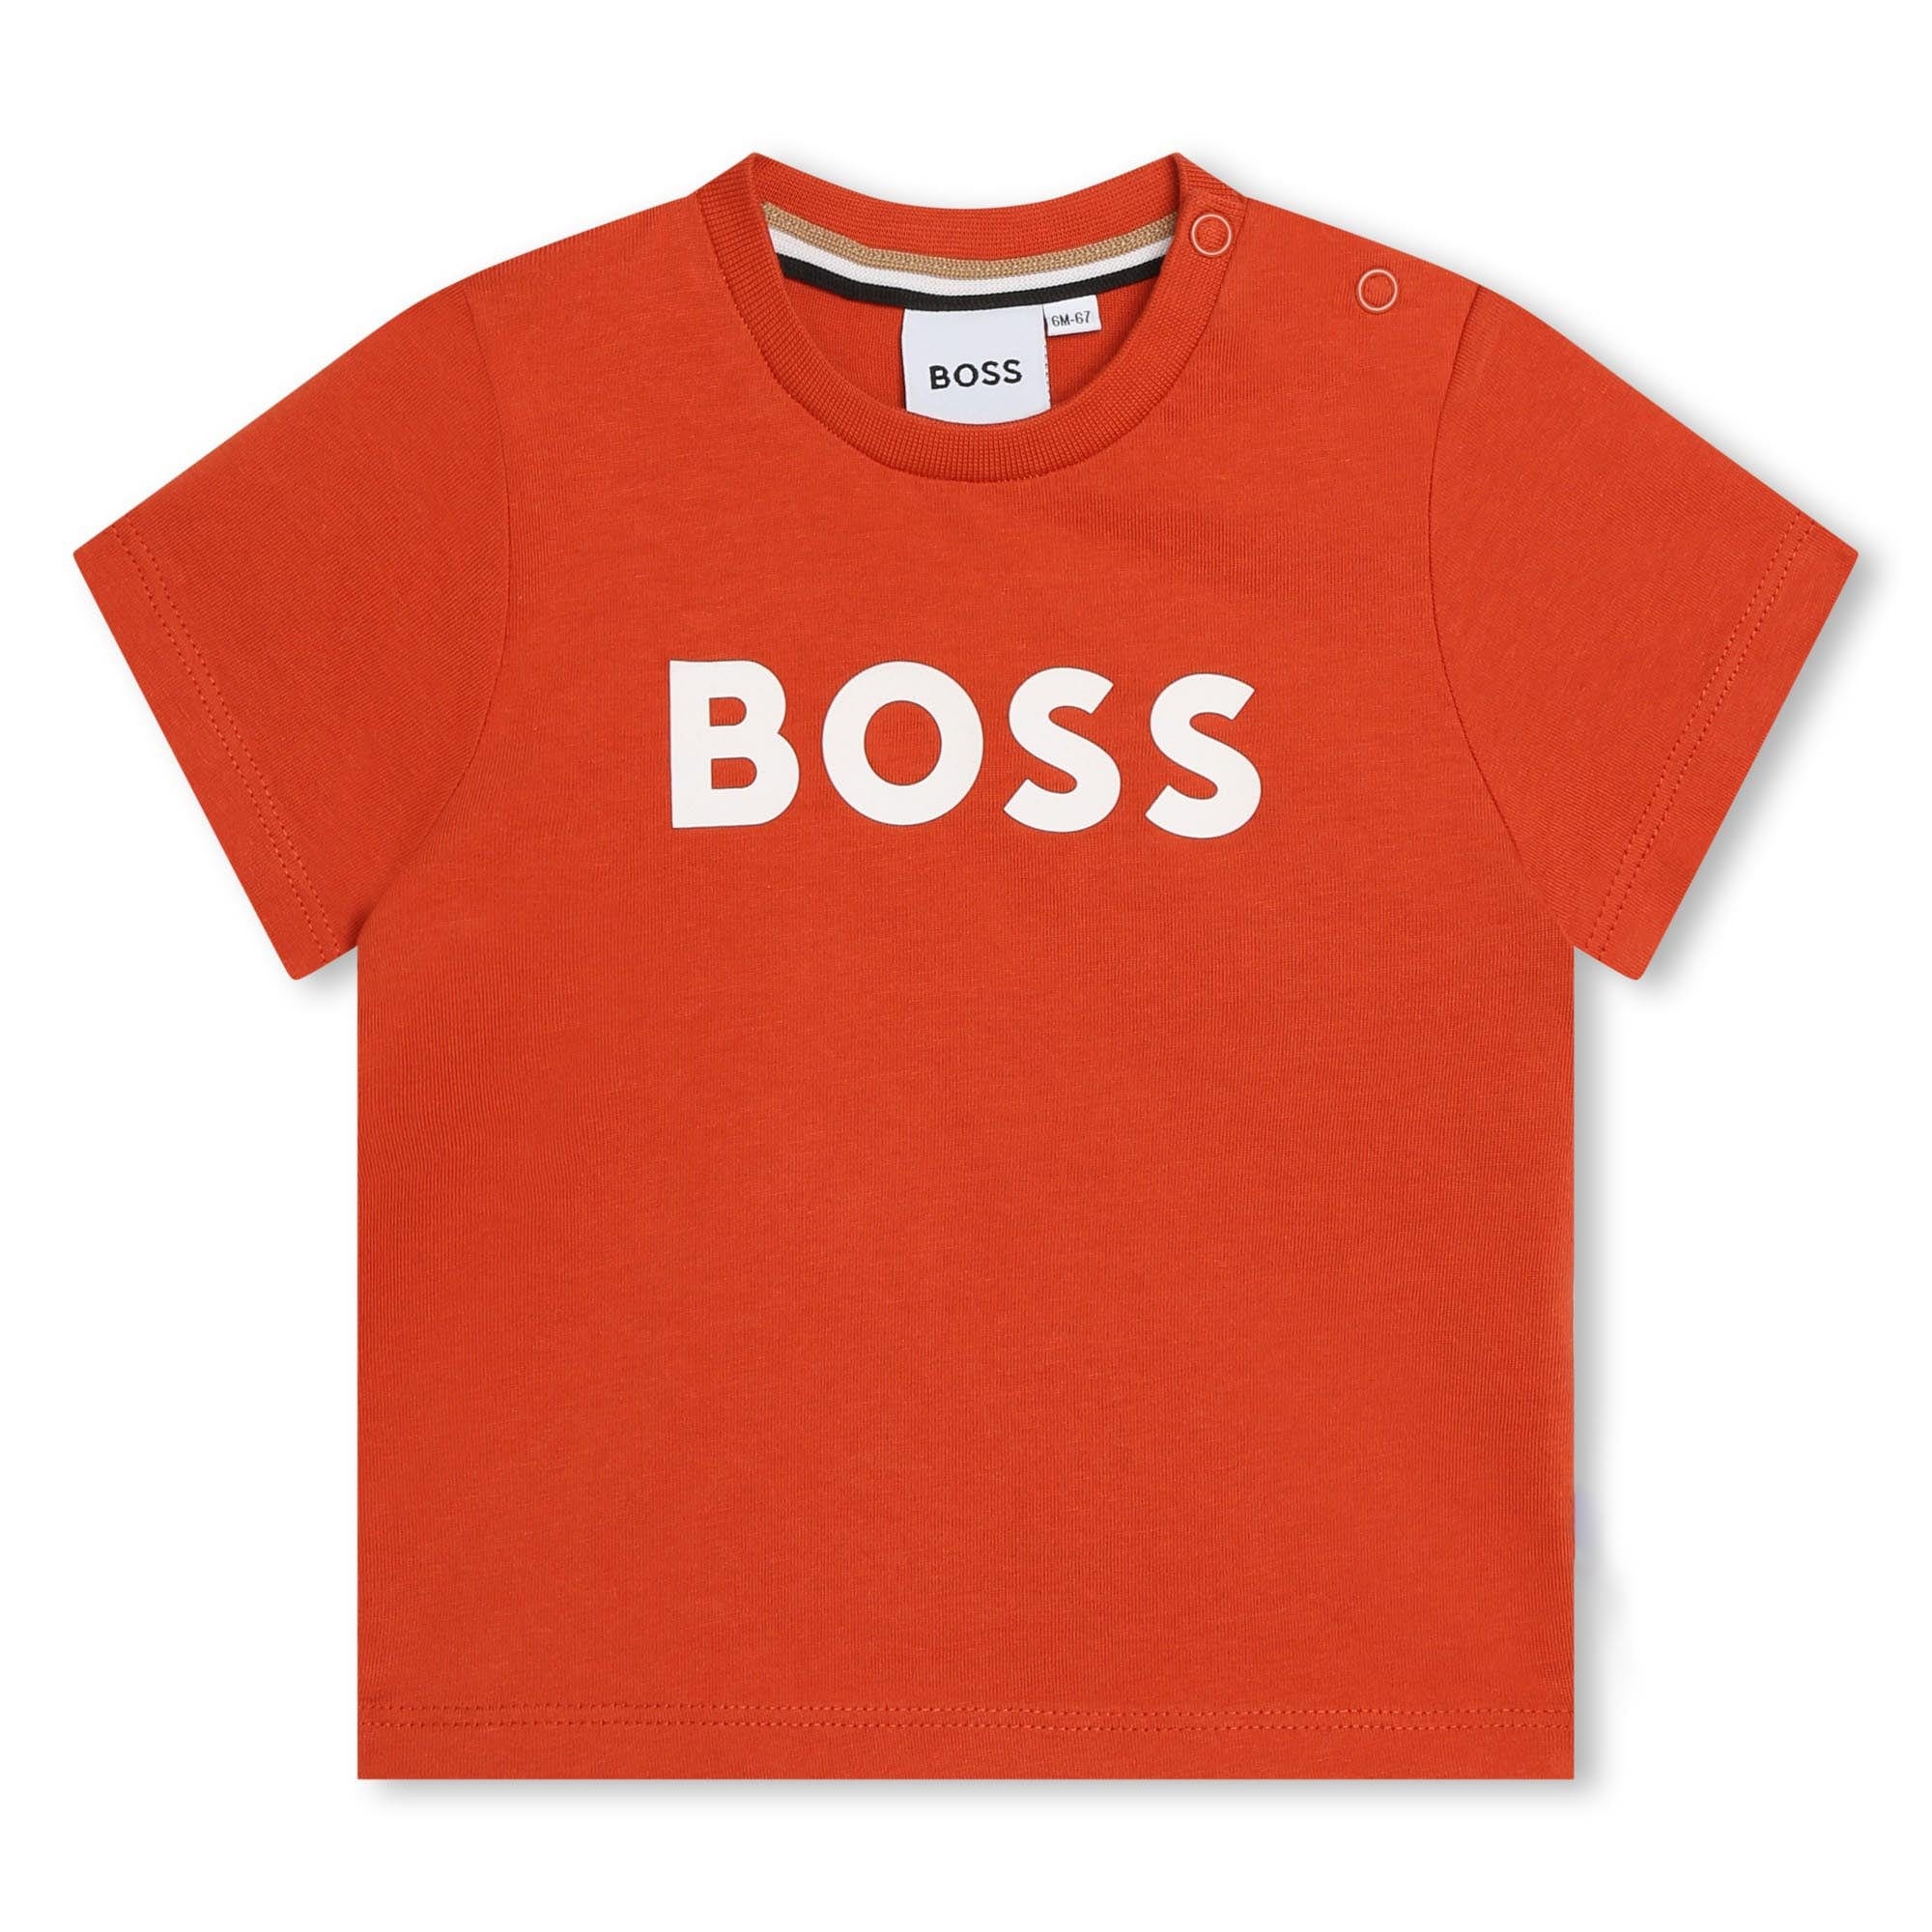 Boss Top J05A20 Boss Boys Dark Tangerine Short Sleeves Tee-Shirt